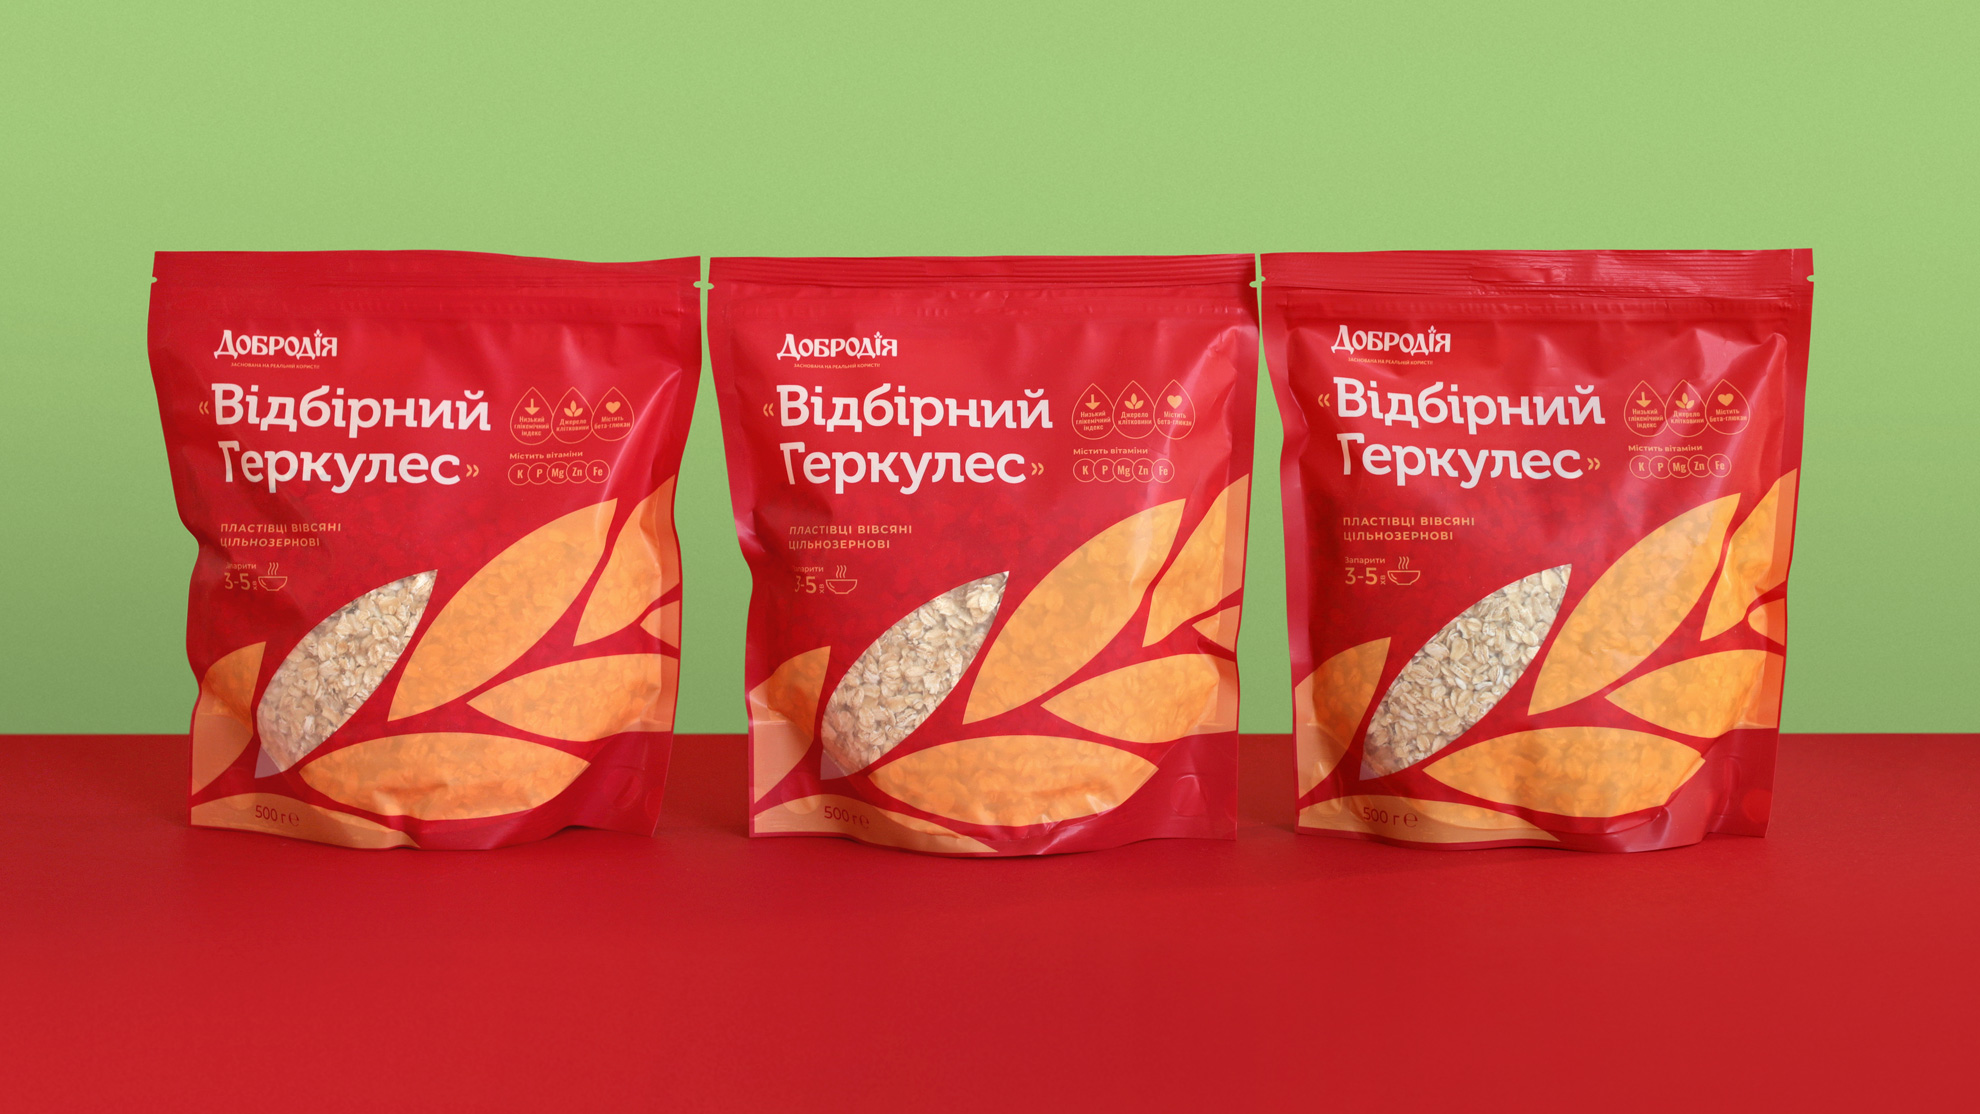 Packaging Design for Dobrodia – The New Oatmeal Porridge